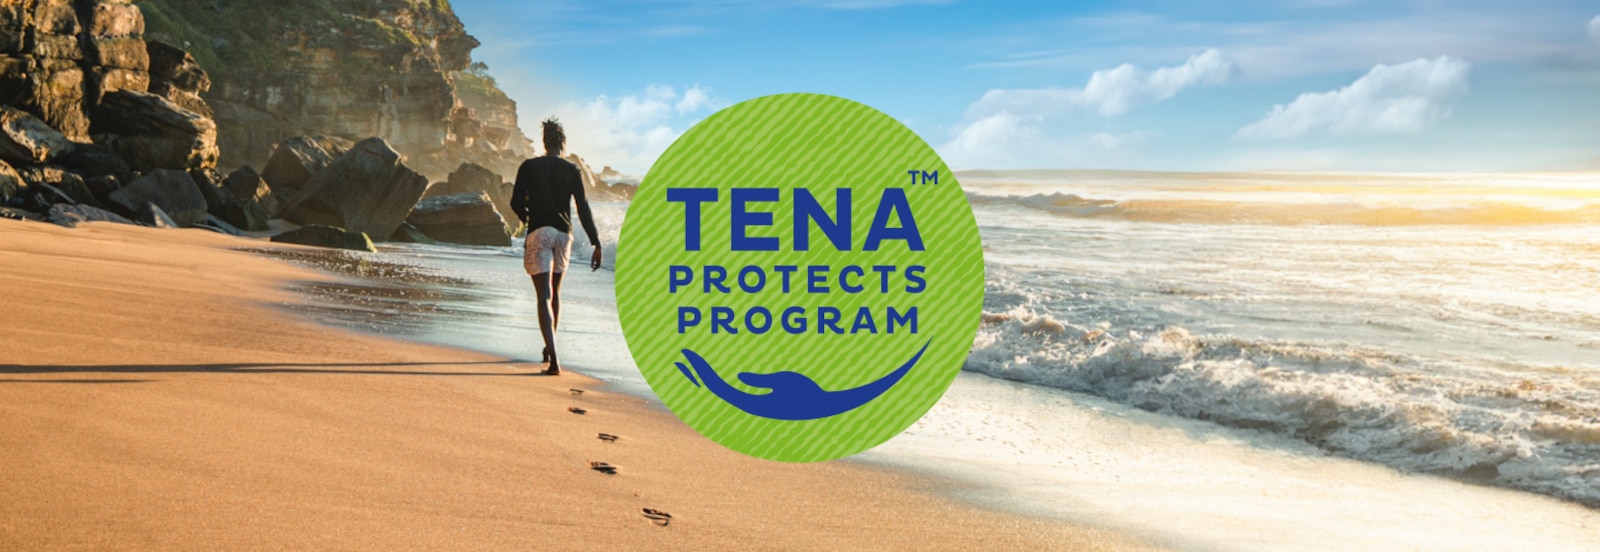 Das Logo des TENA Protects-Programms über dem Foto eines Mannes, der an einem sonnigen Strand in Richtung weit entfernter Klippen läuft 